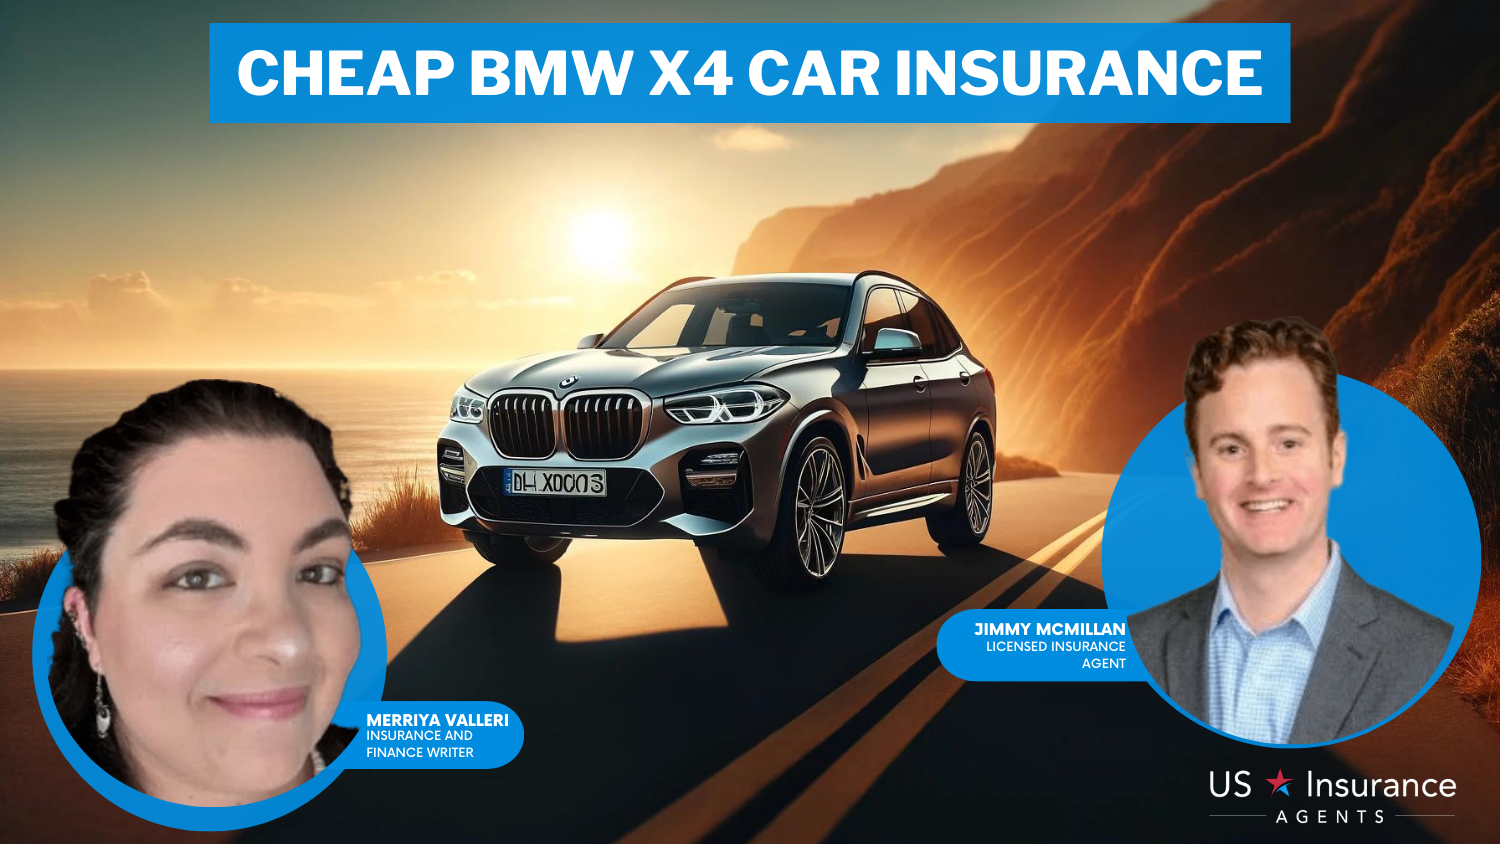 Erie, State Farm, Travelers: Cheap BMW X4 Car Insurance